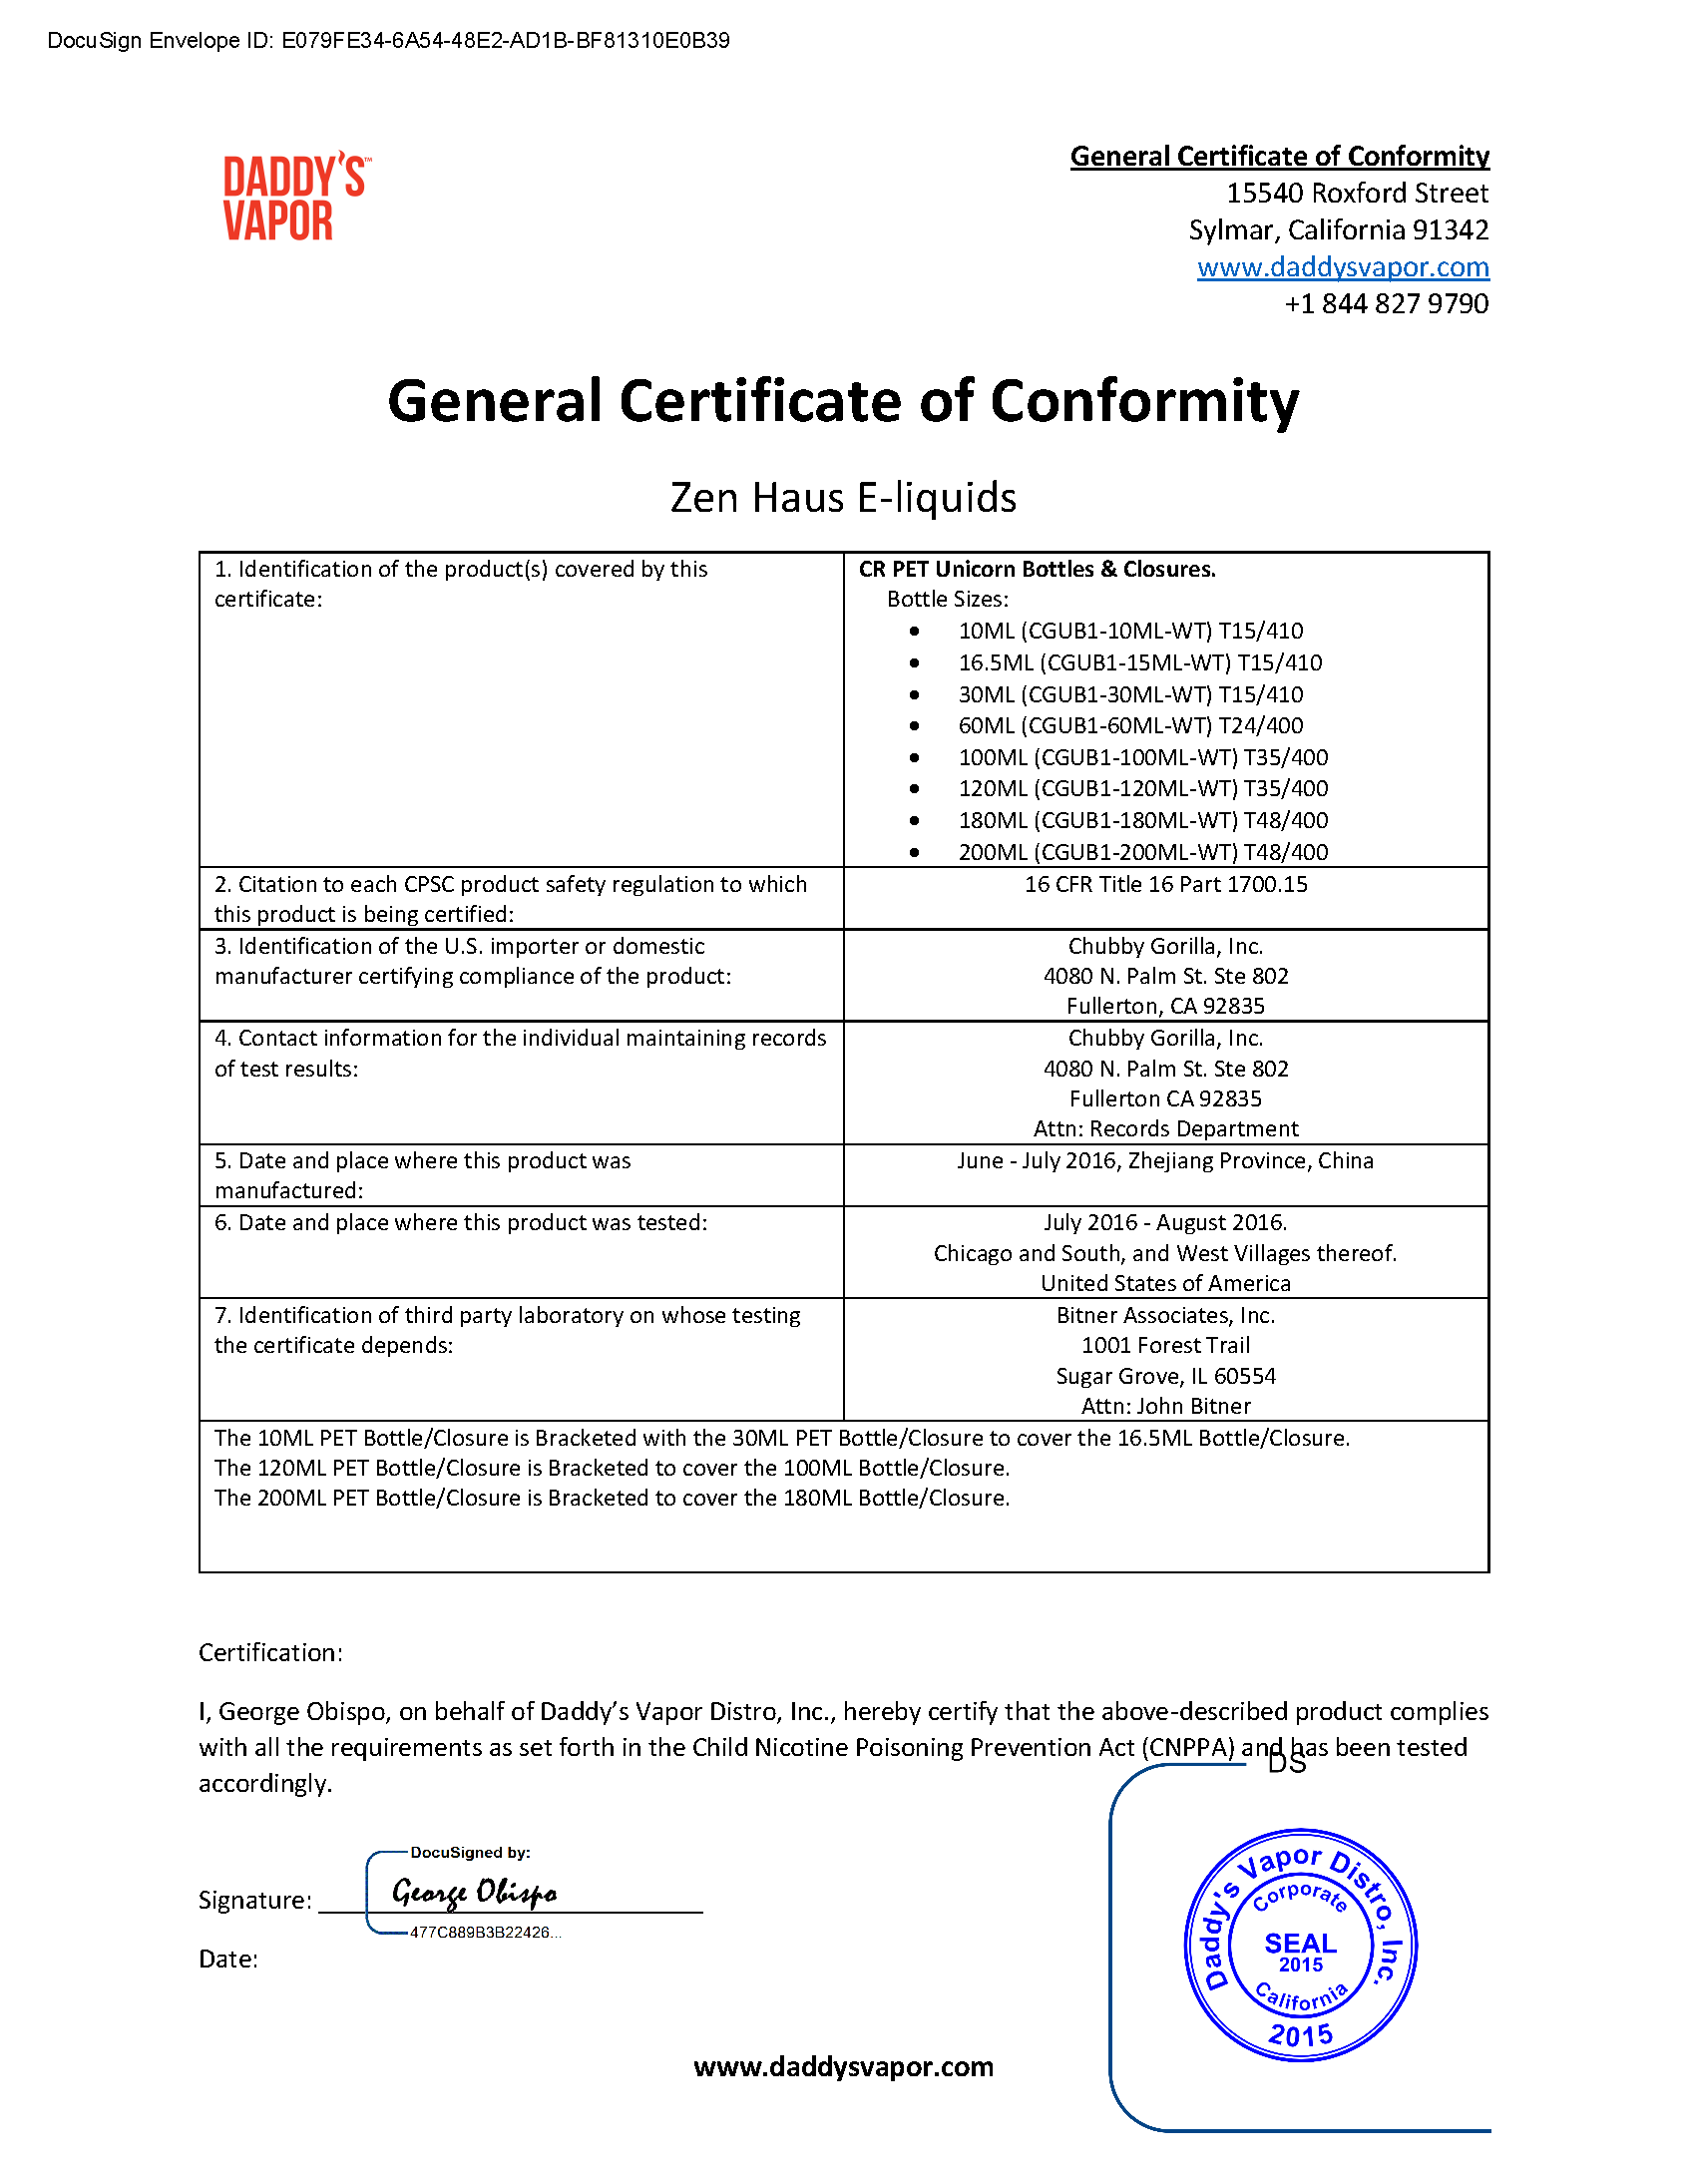 Zen Haus E-liquids General Certificate of Conformity